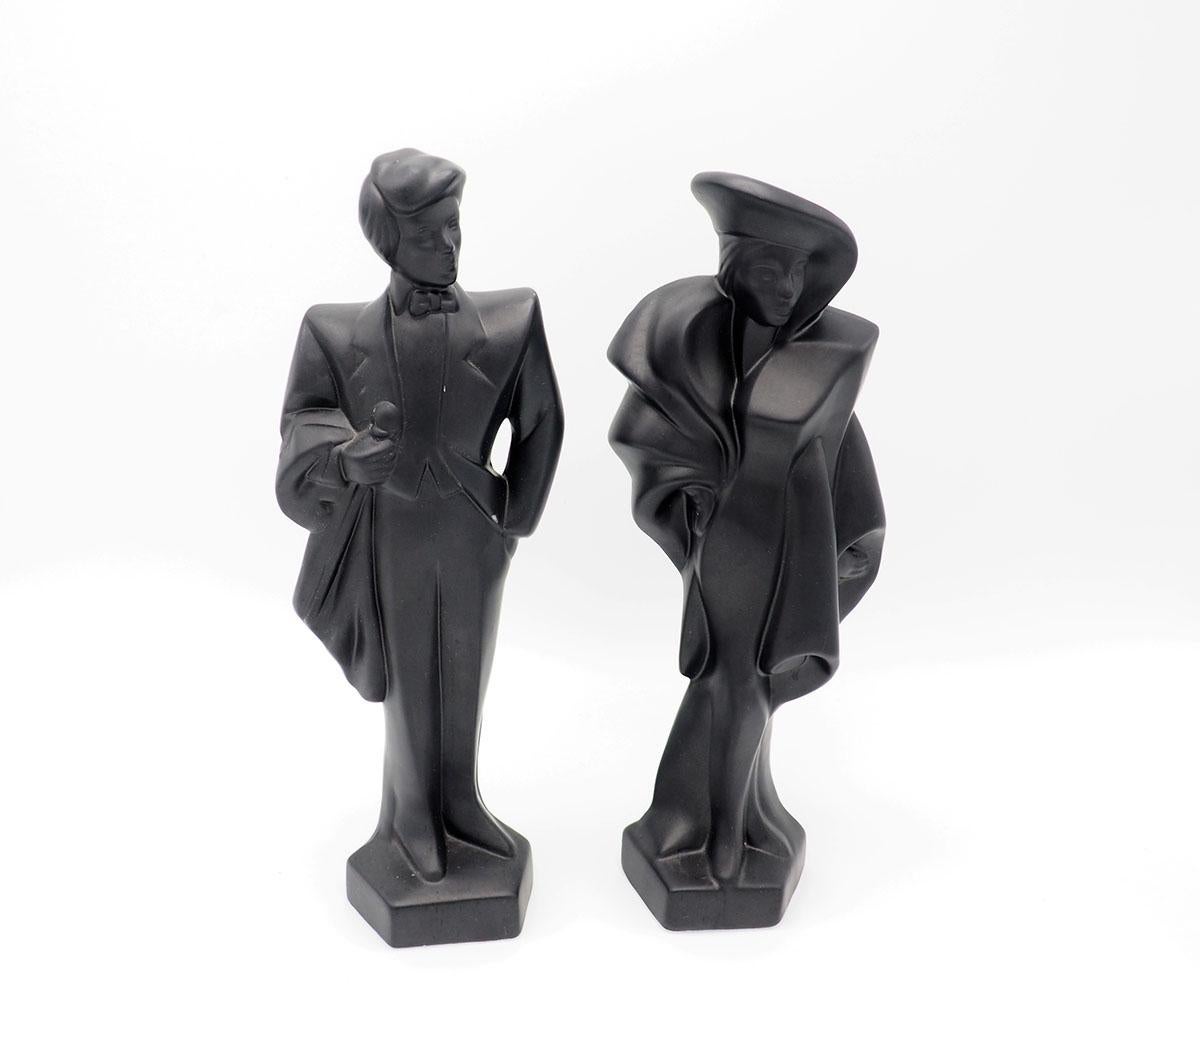 1980er-Jahre-Figuren eines Mannes und einer Frau in Art-Déco-Galakleidung.

Die mattschwarzen Figuren sind aus Gips und wurden in den 1980er Jahren hergestellt.

In den 80er und 90er Jahren war Lindsay B eine führende Avantgarde-Künstlerin, diese